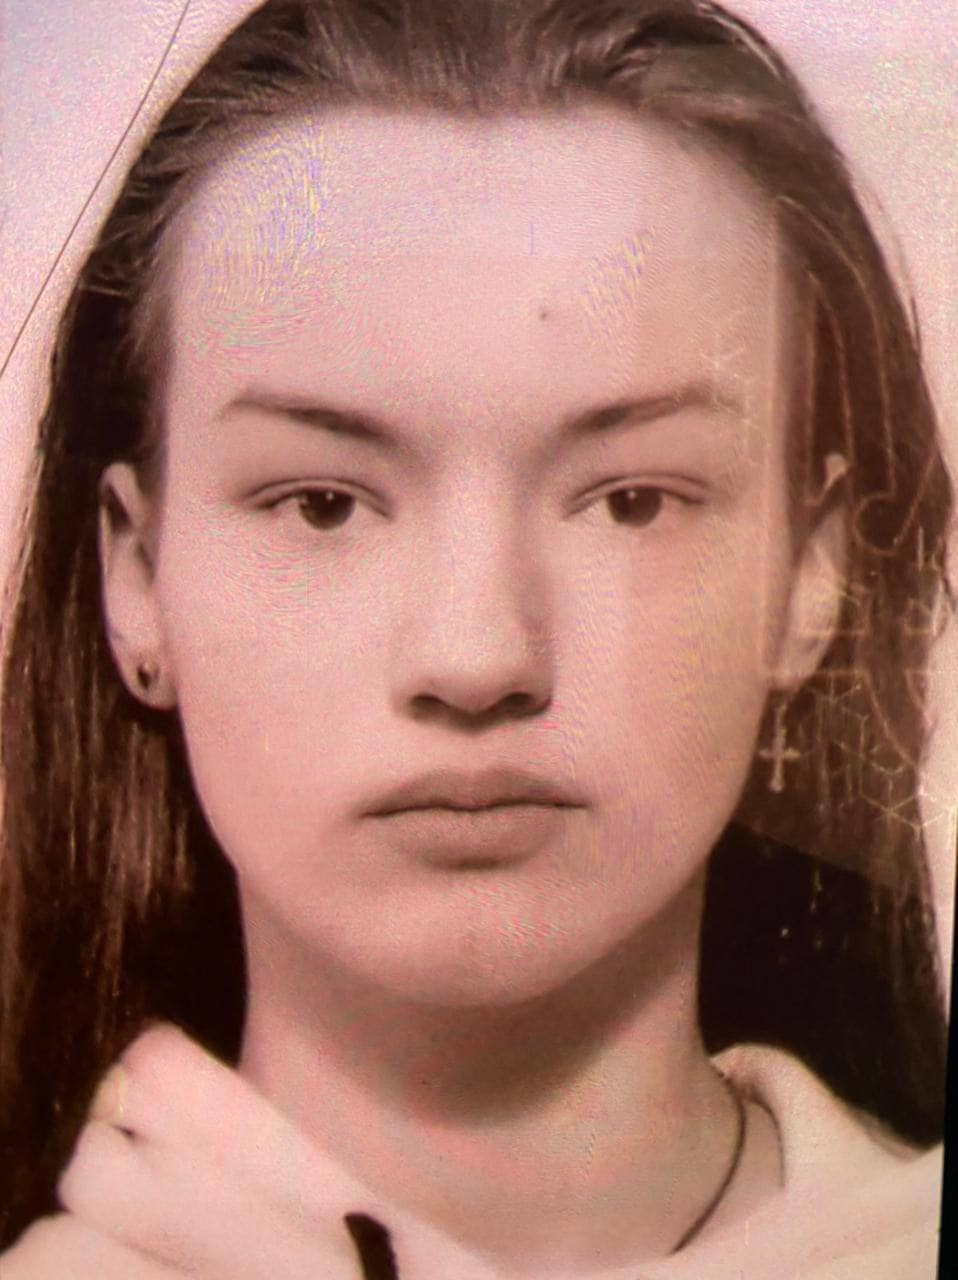 Пішла з дому й не повернулася: на Київщині розшукують 16-річну дівчину - зображення